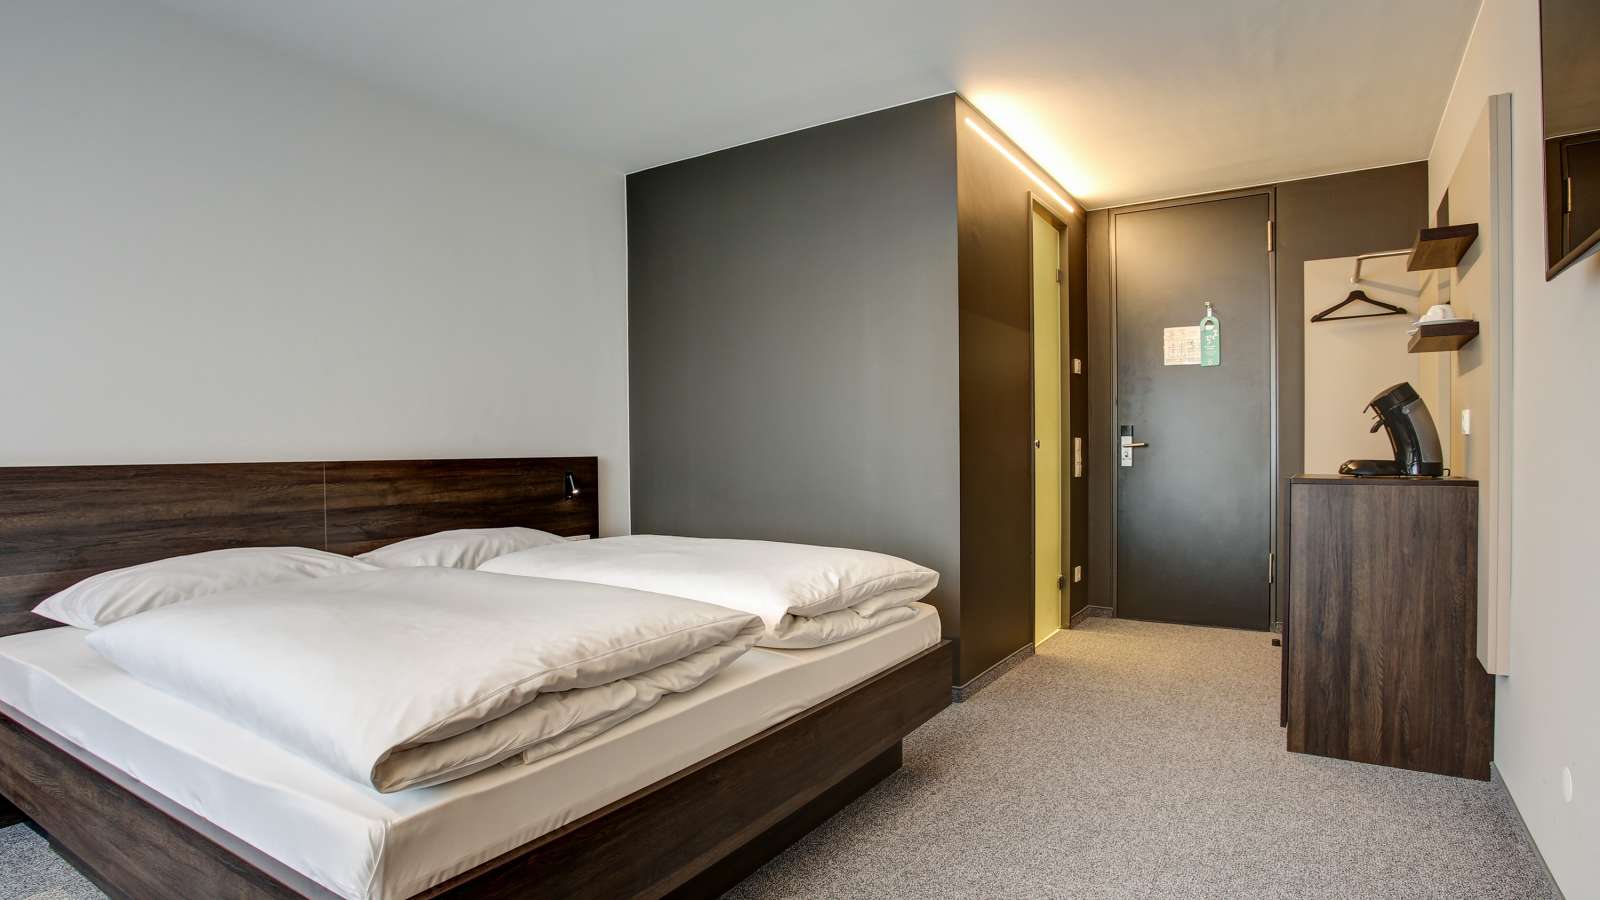 Doppelzimmer mit Bad im Centro Park Hotel Stuttgart